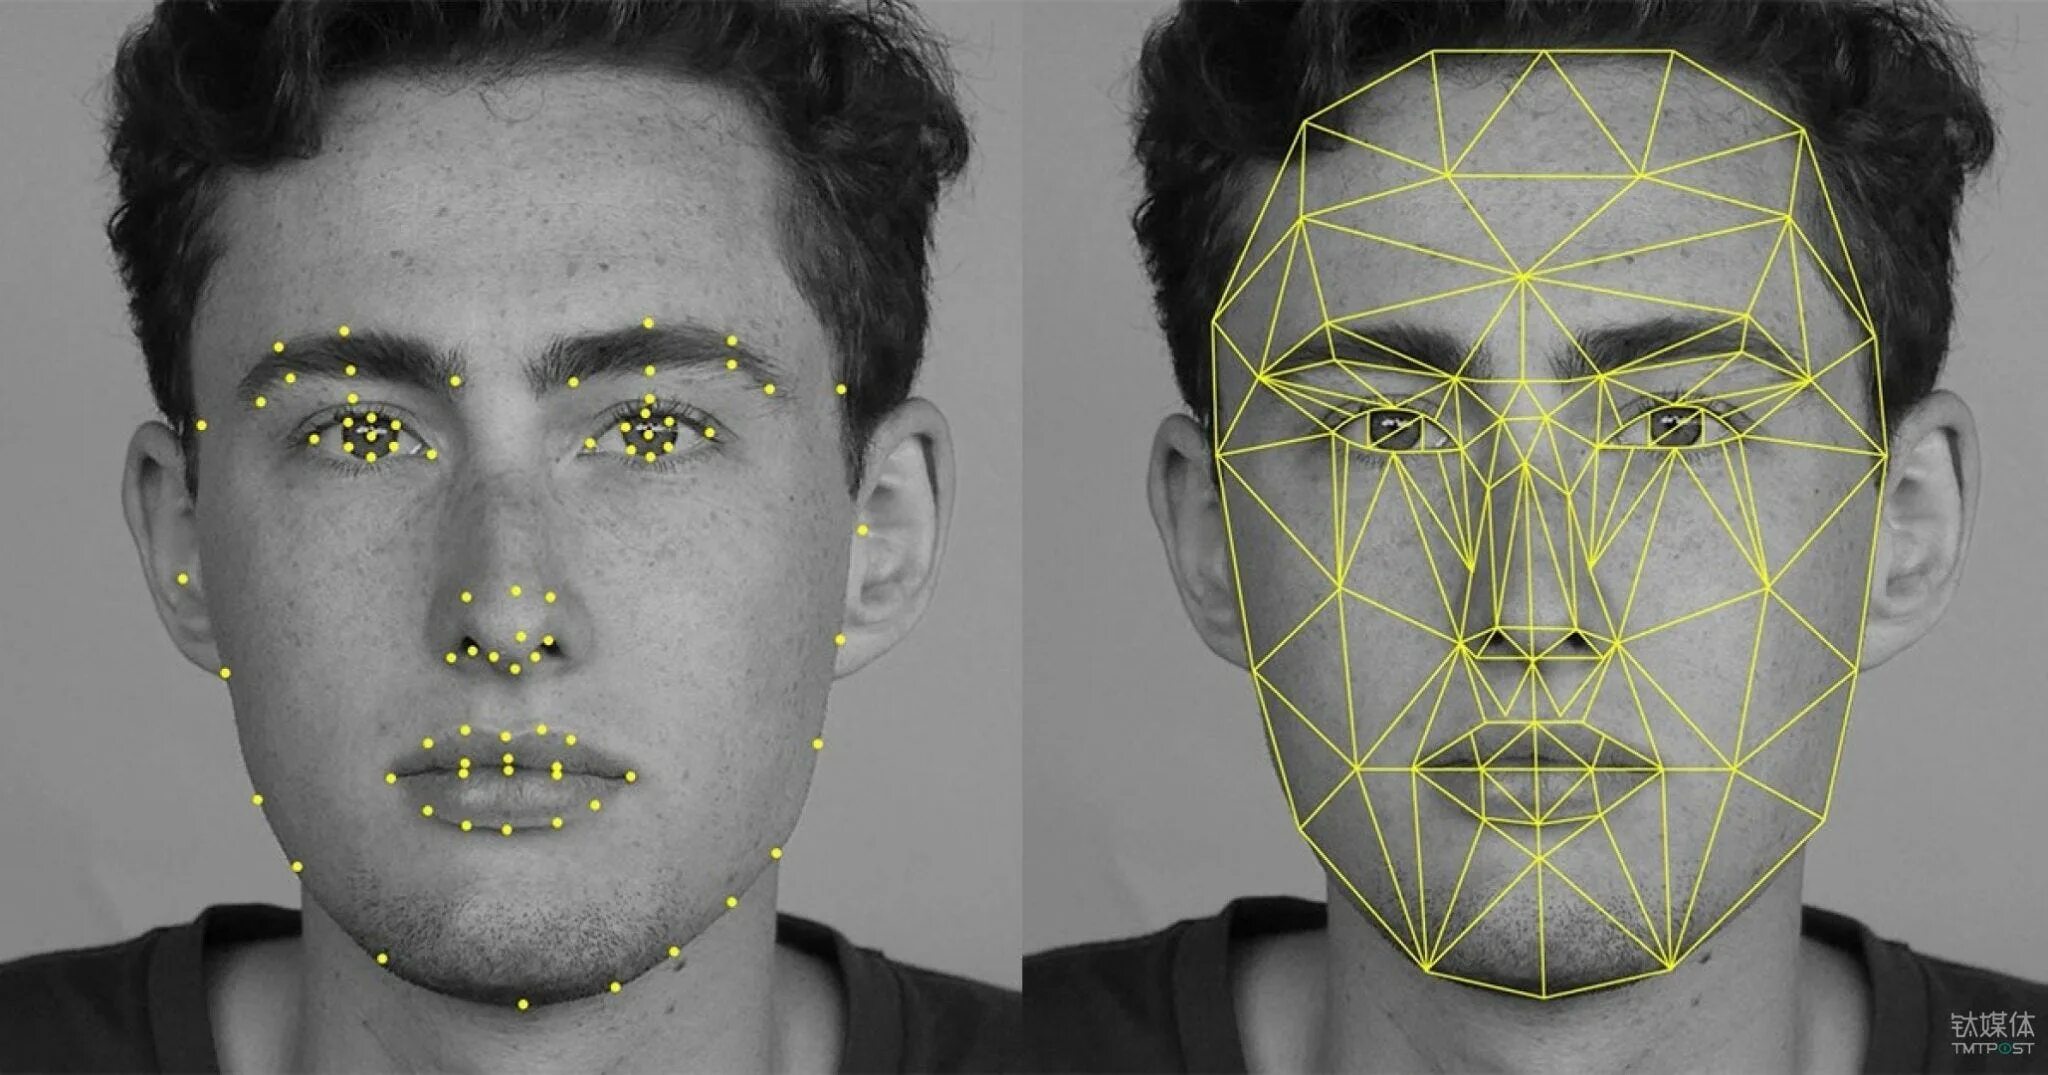 Ответы с помощью ии. Технология распознавания лиц. Идентификация по лицу. Сканирование геометрии лица. Raspoznavaniye obrazov iskustvenniy intelekta.